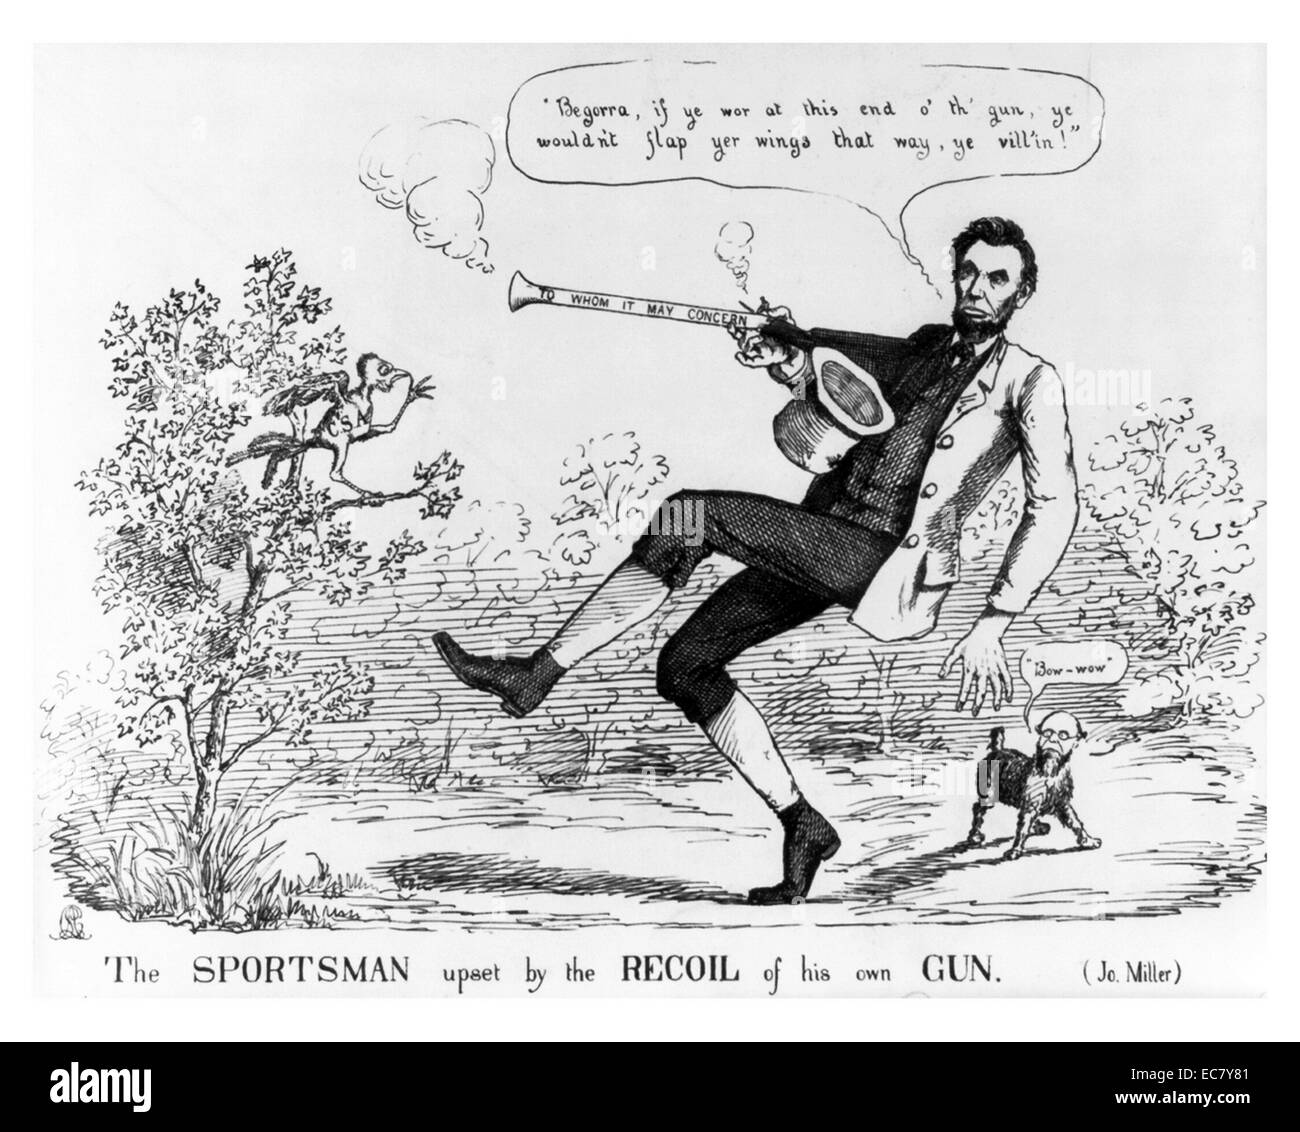 Lo sportivo sconvolto dal rinculo della propria pistola' Lincoln (1809-1865) è raffigurato come un mite e inefficaci nella sua prosecuzione della guerra. In una scena boschiva Lincoln, qui il personaggio di un atleta irlandese in ginocchio-calzoncini, scarica la sua blunderbuss presso un piccolo uccello " C.S.A.' (Stati Uniti d'America). L'uccello, arroccato in una struttura ad albero a sinistra, è incolume, ma Lincoln cade indietro facendo voto, 'Begorra, se voi wor a questo fine o' th' pistola, voi non sarebbe lembo yer ali in questo modo, voi vill'!' a destra il segretario della guerra Stanton, che ha il corpo di un cane, cortecce, "Bow-wow". Foto Stock